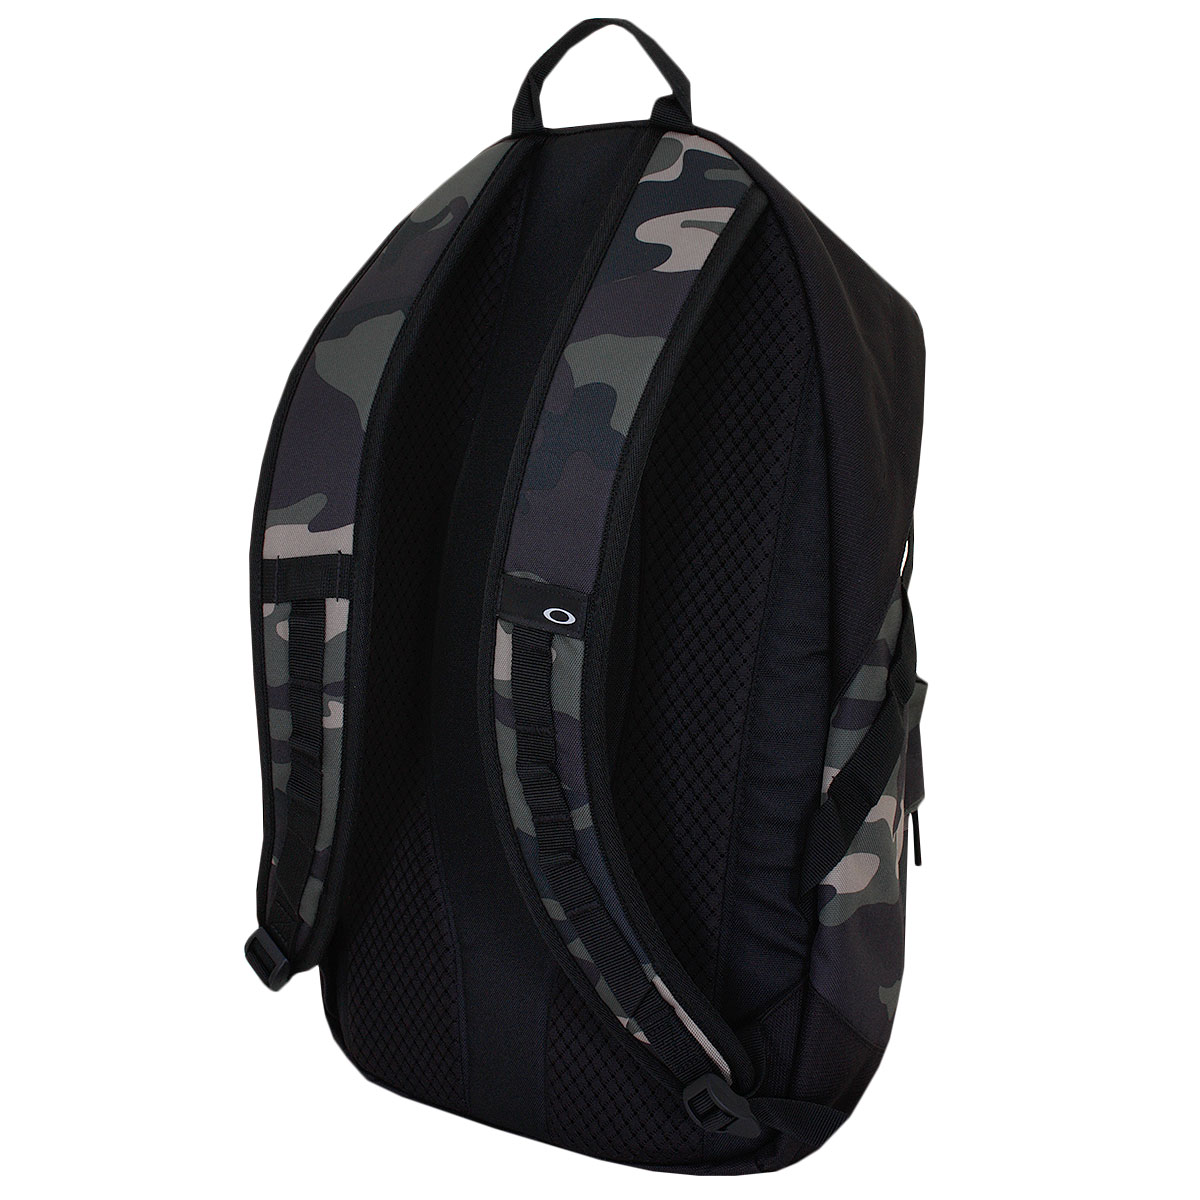 Oakley Holbrook 20L Backpack 